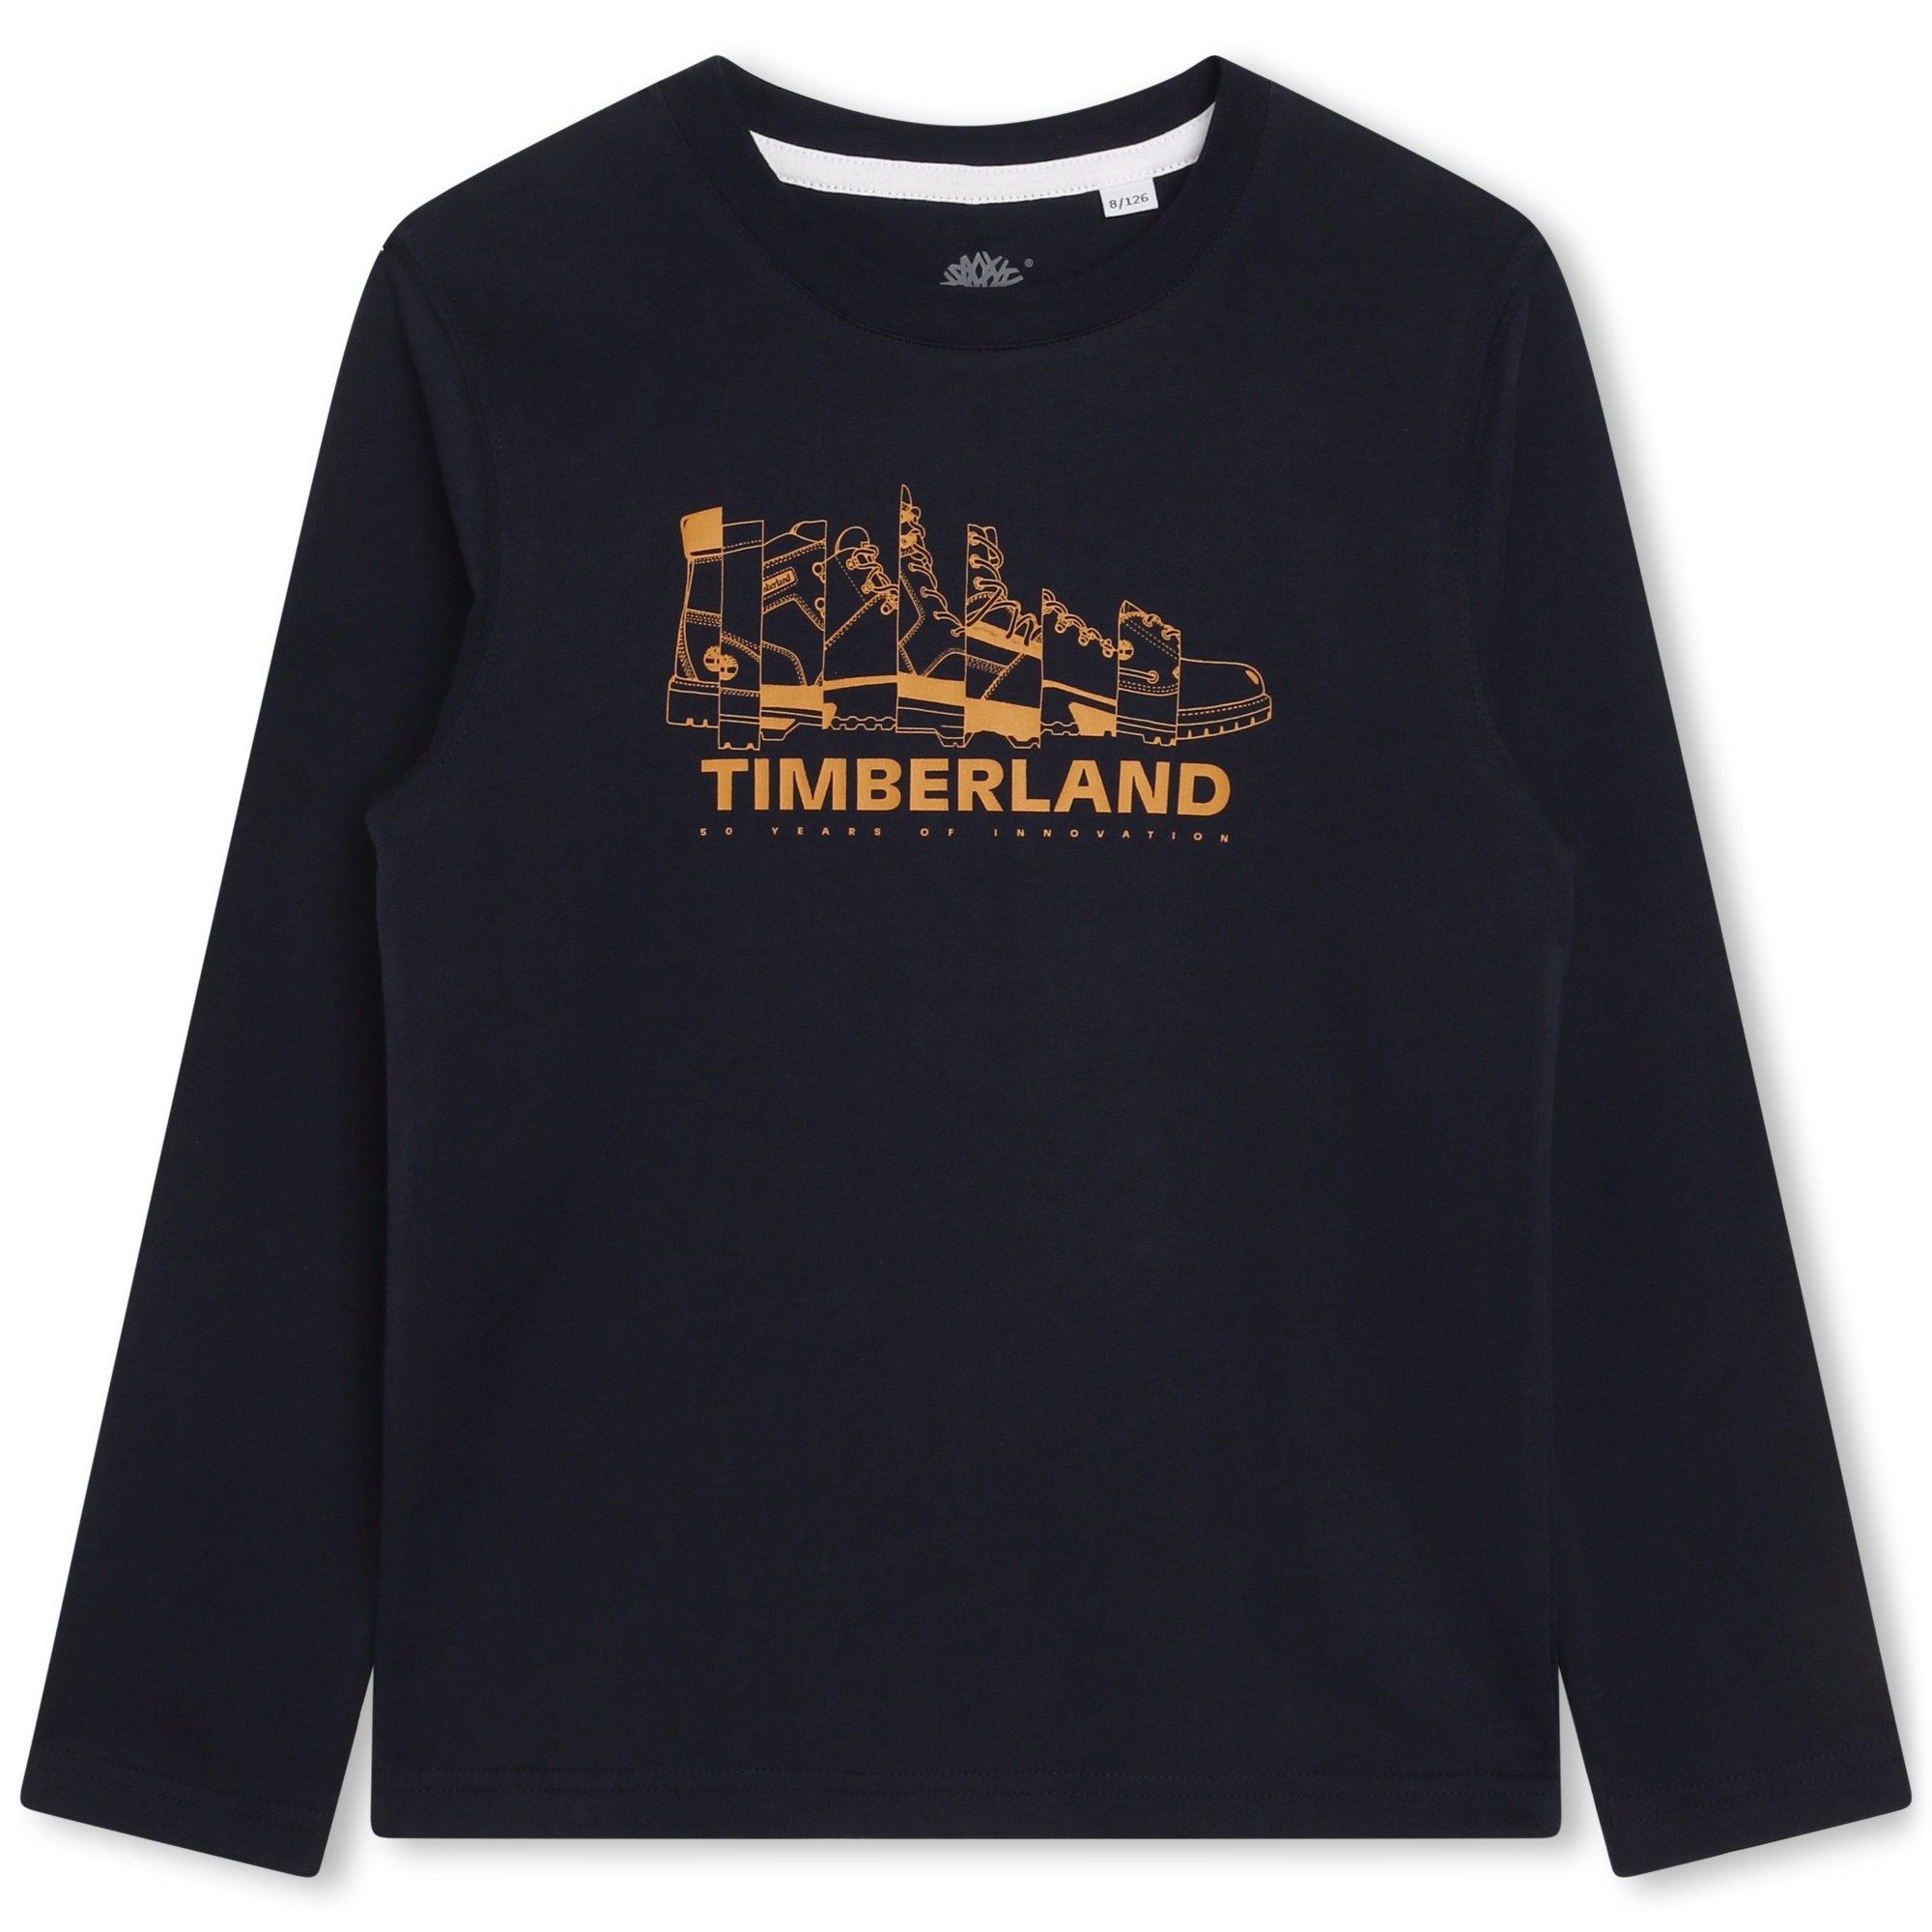 T-shirt stampa Yellow Boot TIMBERLAND Per RAGAZZO